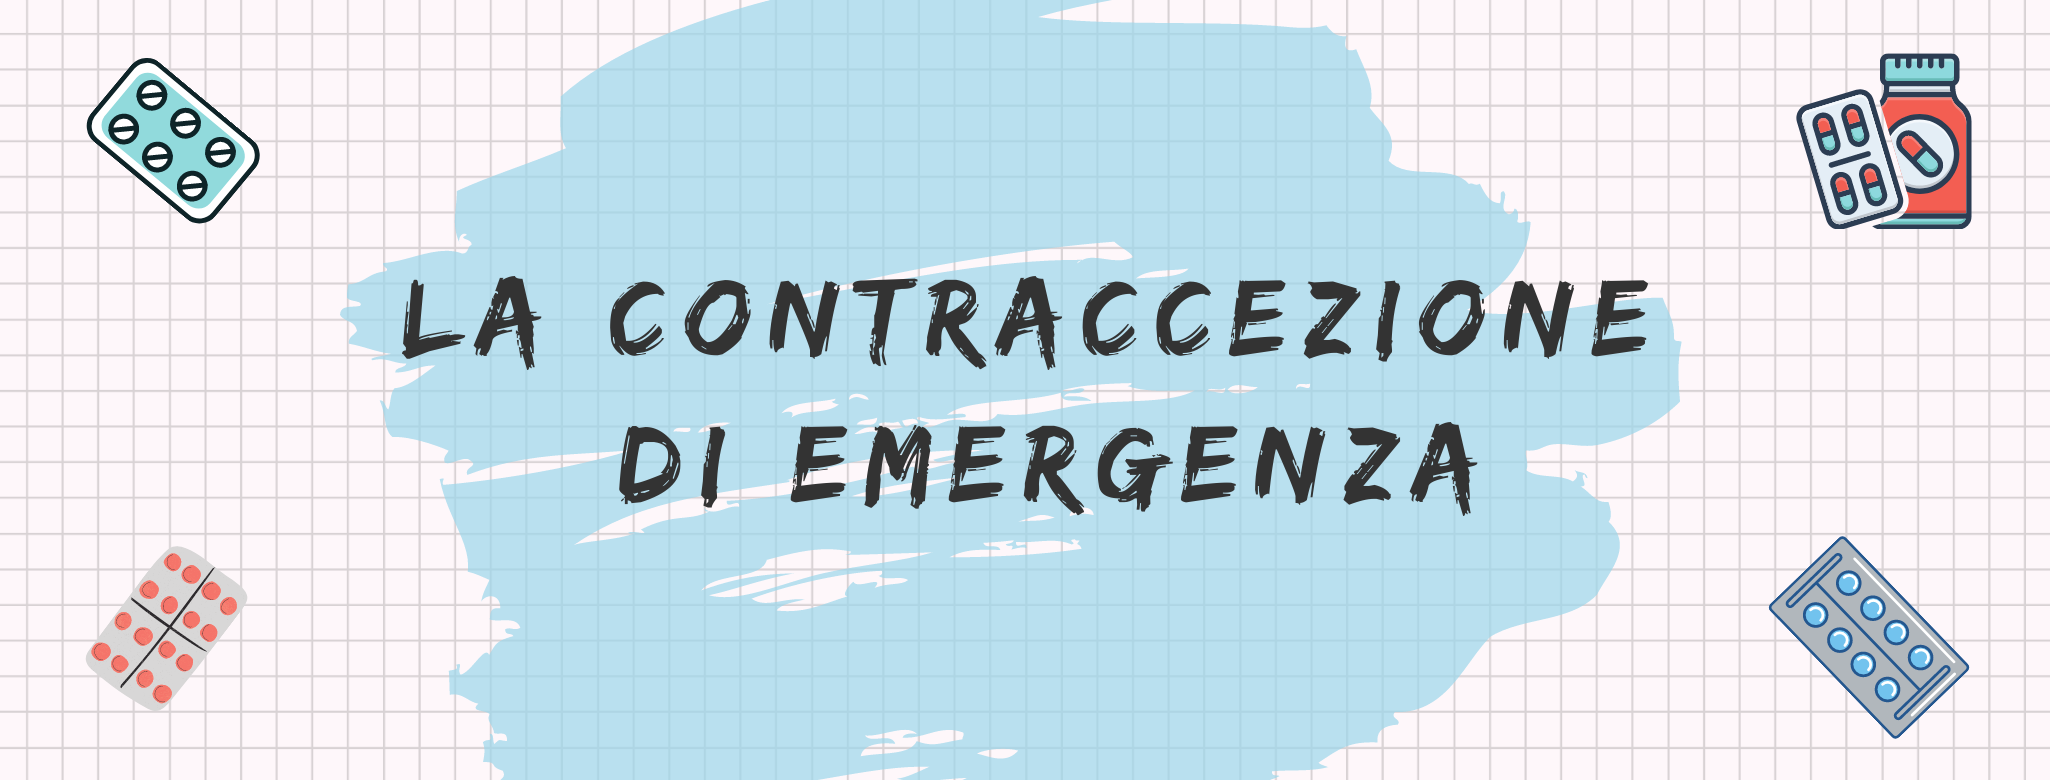 Copertina Contraccezione di emergenza3